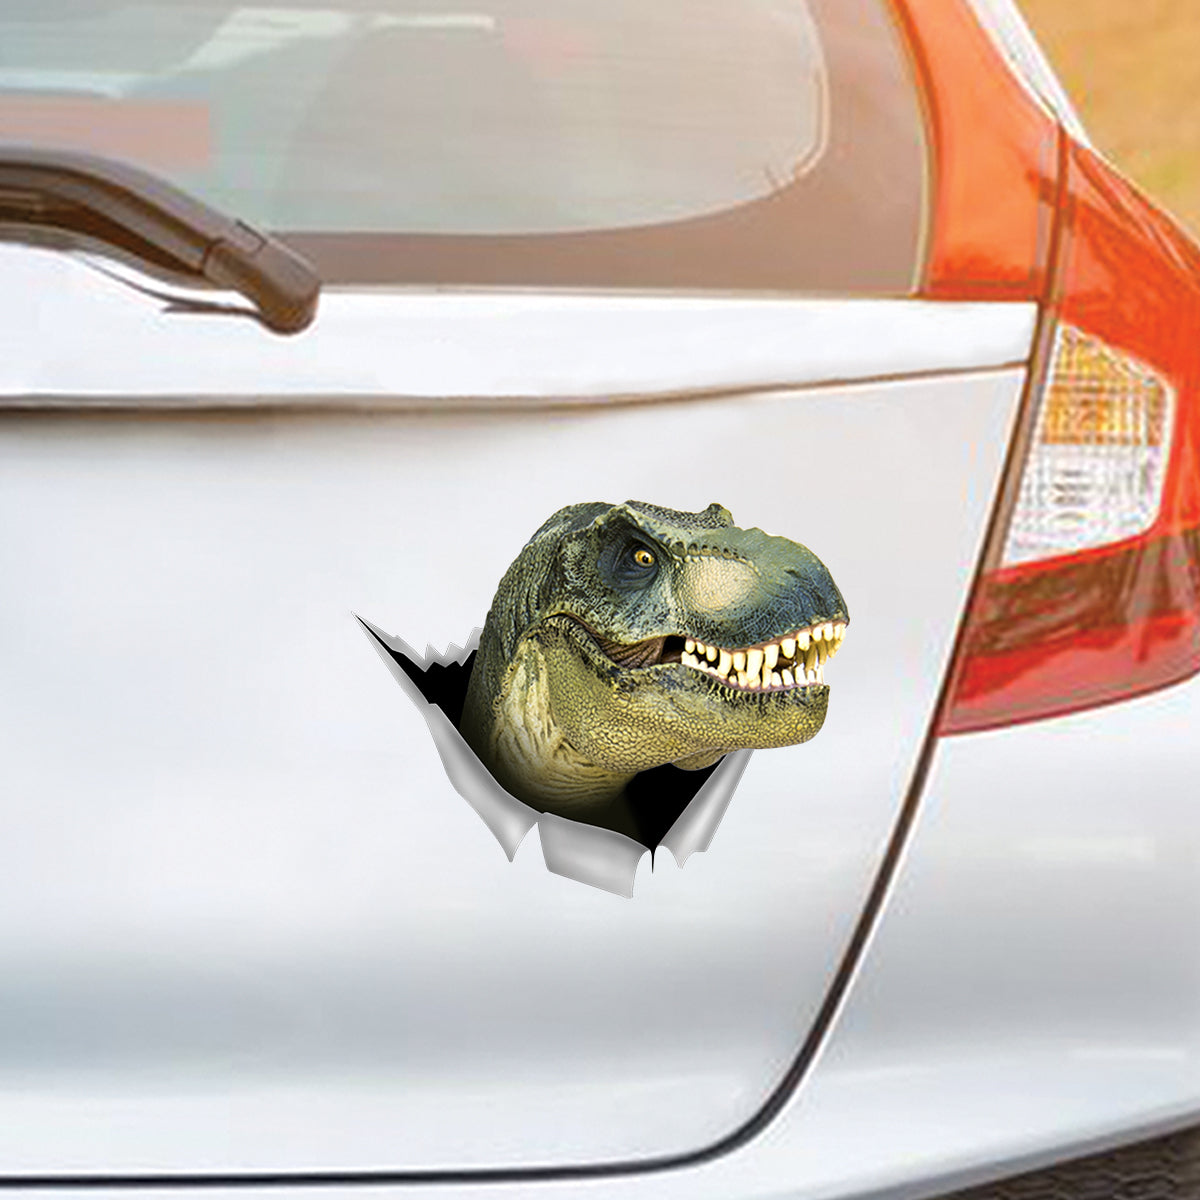 Bonjour, nous sommes sur le chemin de Jurassic Park - Autocollant dinosaure pour voiture/porte/réfrigérateur/ordinateur portable V2